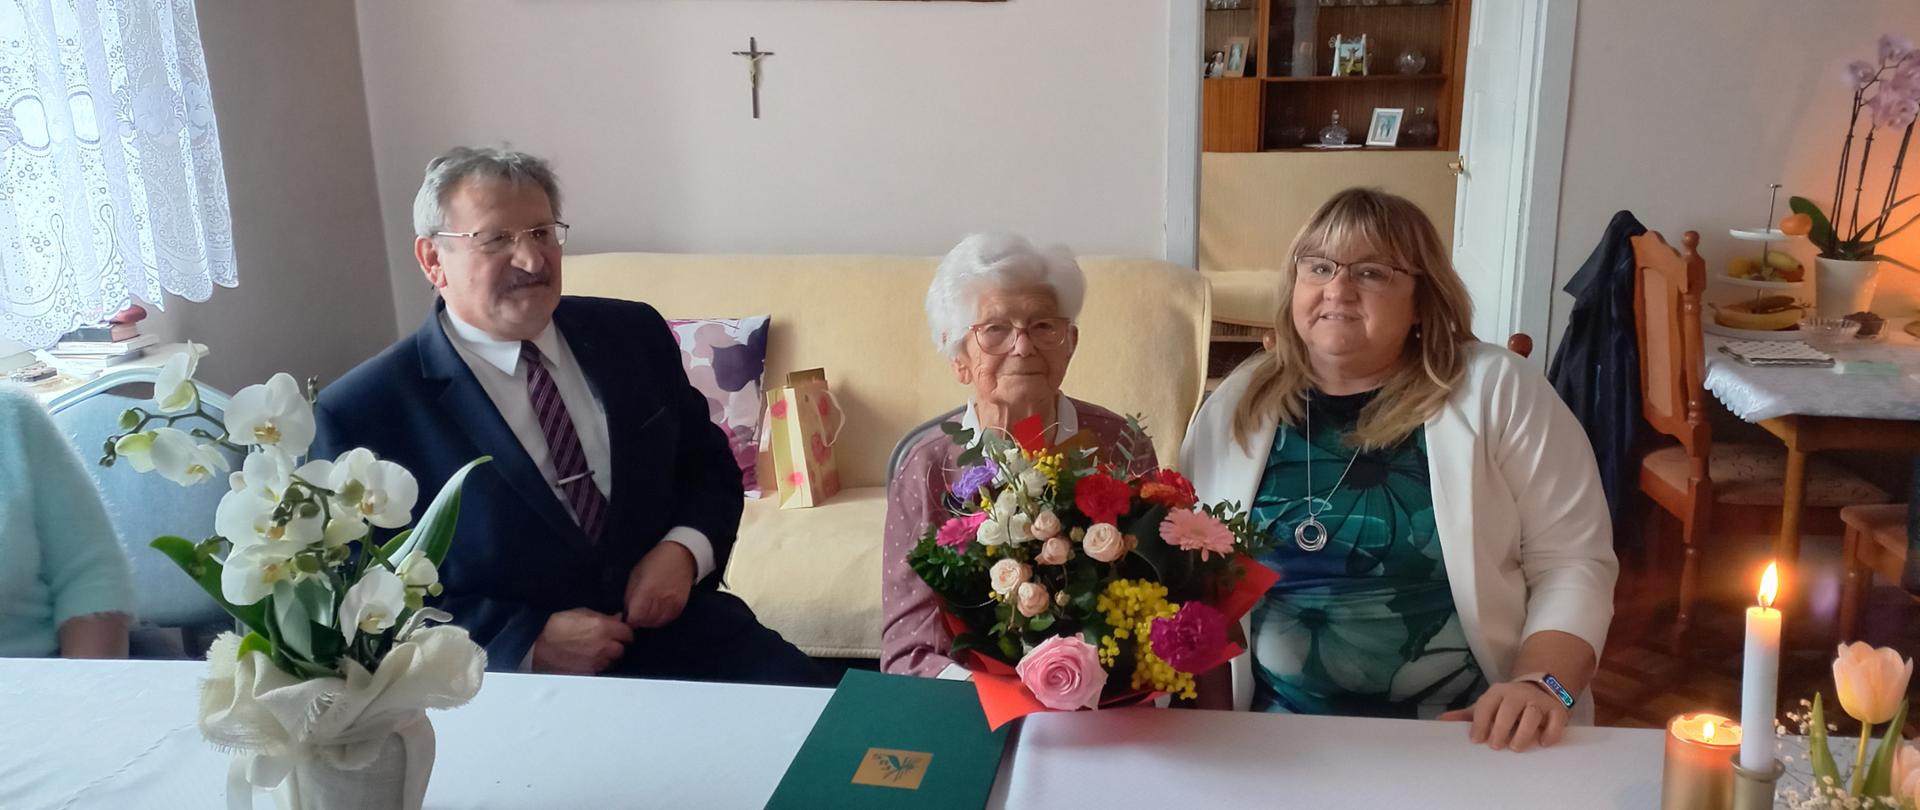 Jubilatka z bukietem kwiatów siedzi przy stole, po lewej siedzi Kierownik Wydziału Świadczeń Wojciech Zielonka, po prawej Kierownik Placówki Elżbieta Akierman